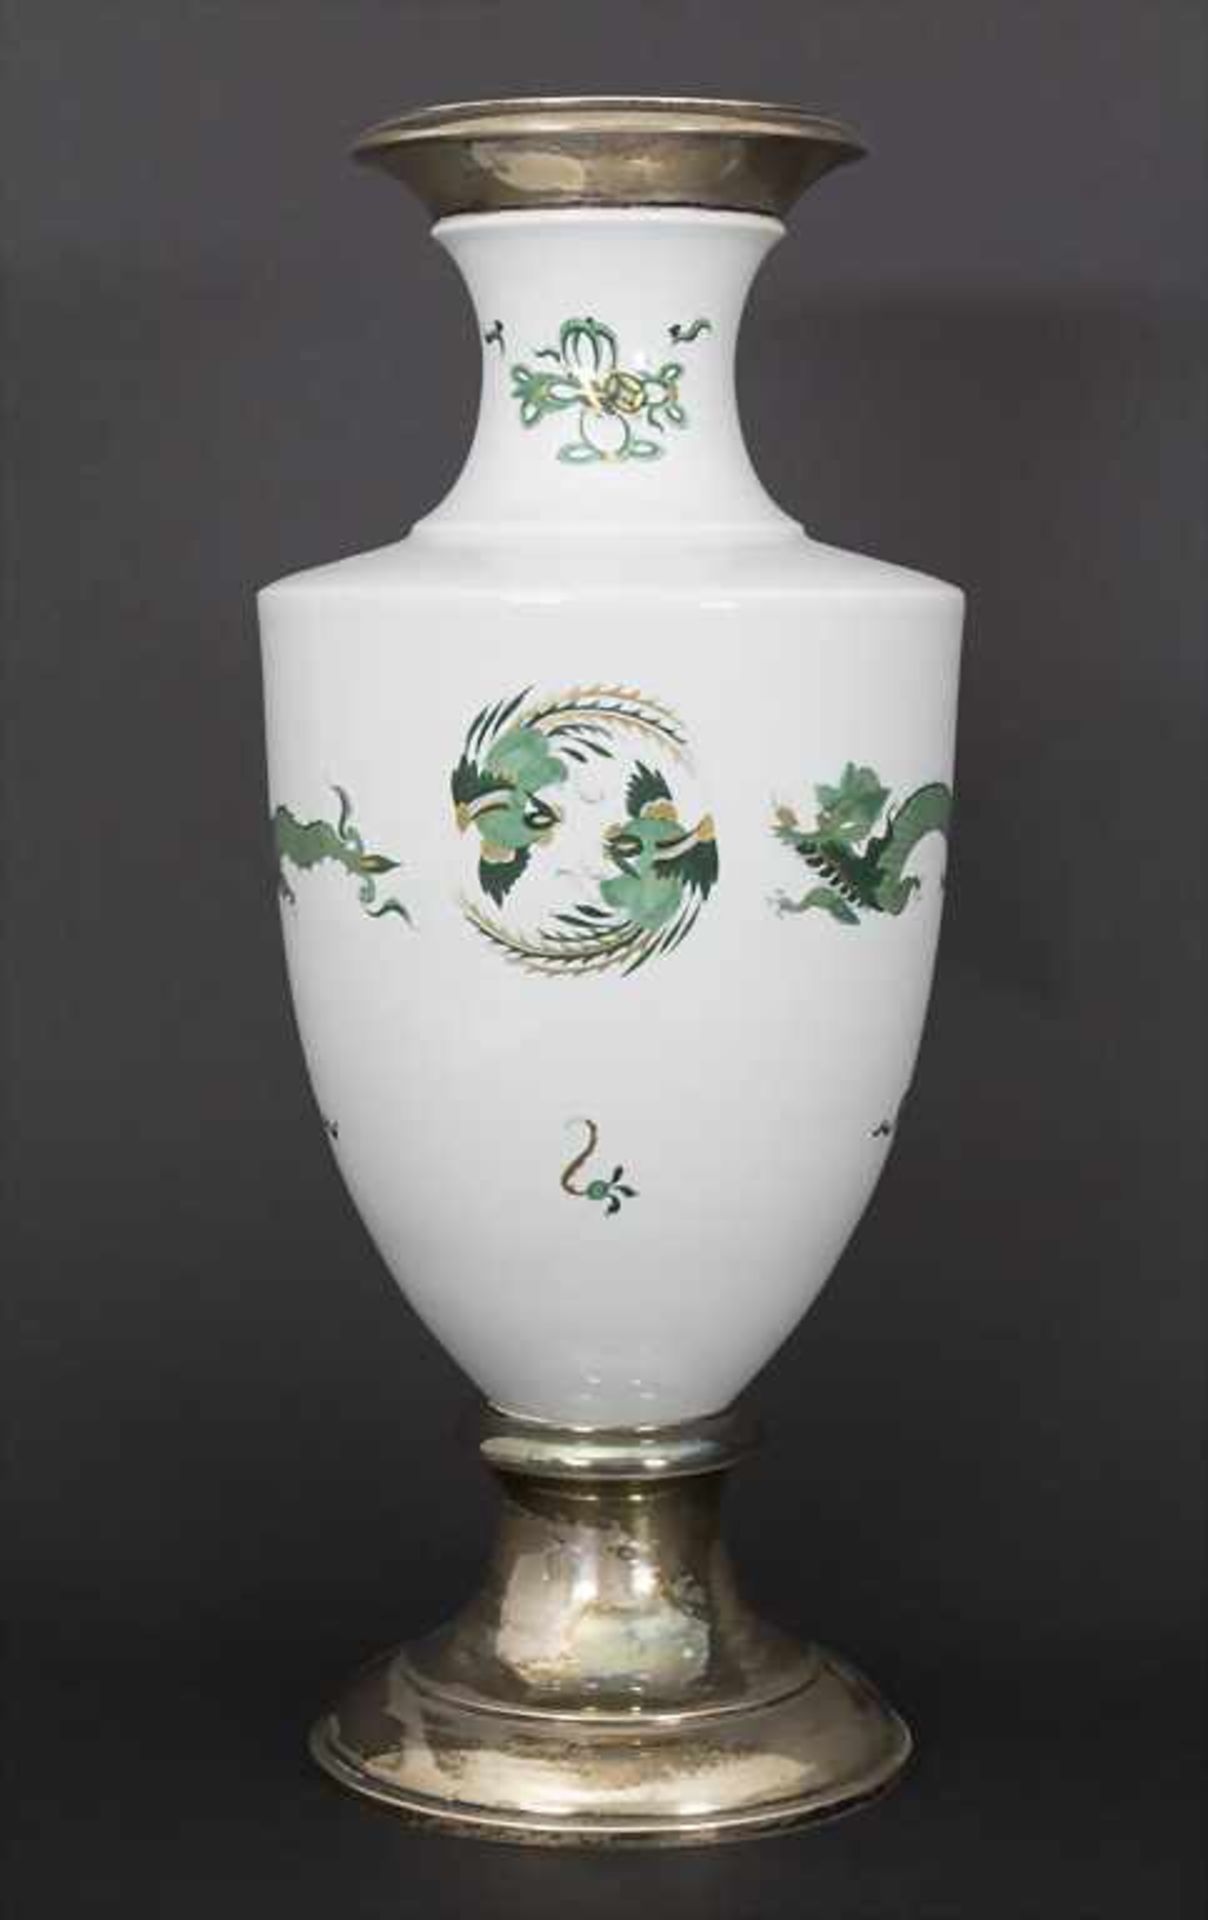 Amphoravase 'Grüner Drache' mit Silbermontierung / An amphora vase 'Green Dragon' with silver mount,